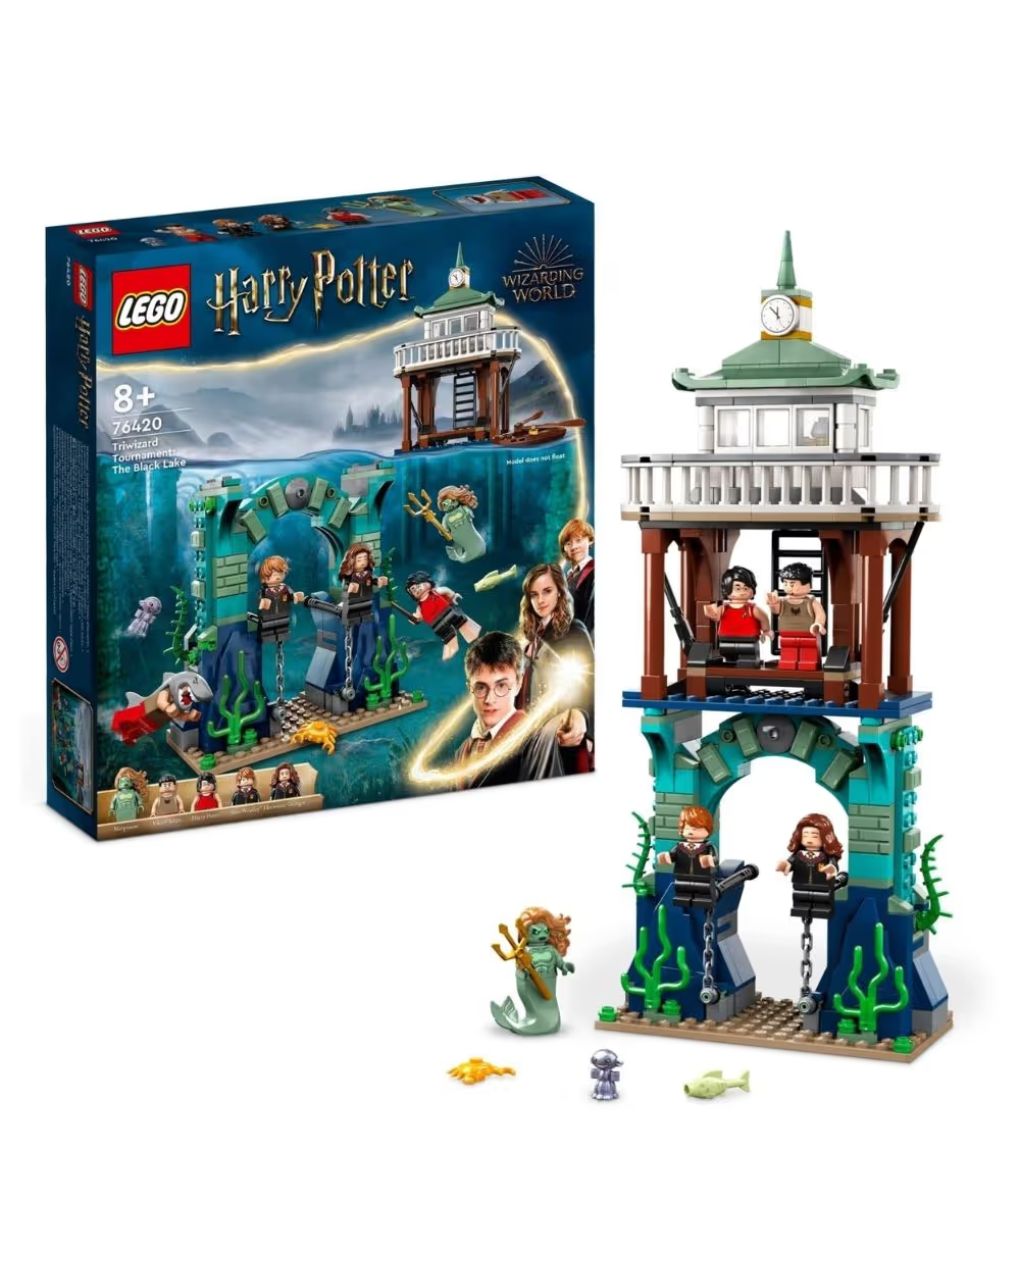 Lego harry potter τρίαθλο μαγείας: η μαύρη λίμνη 76420 - Lego